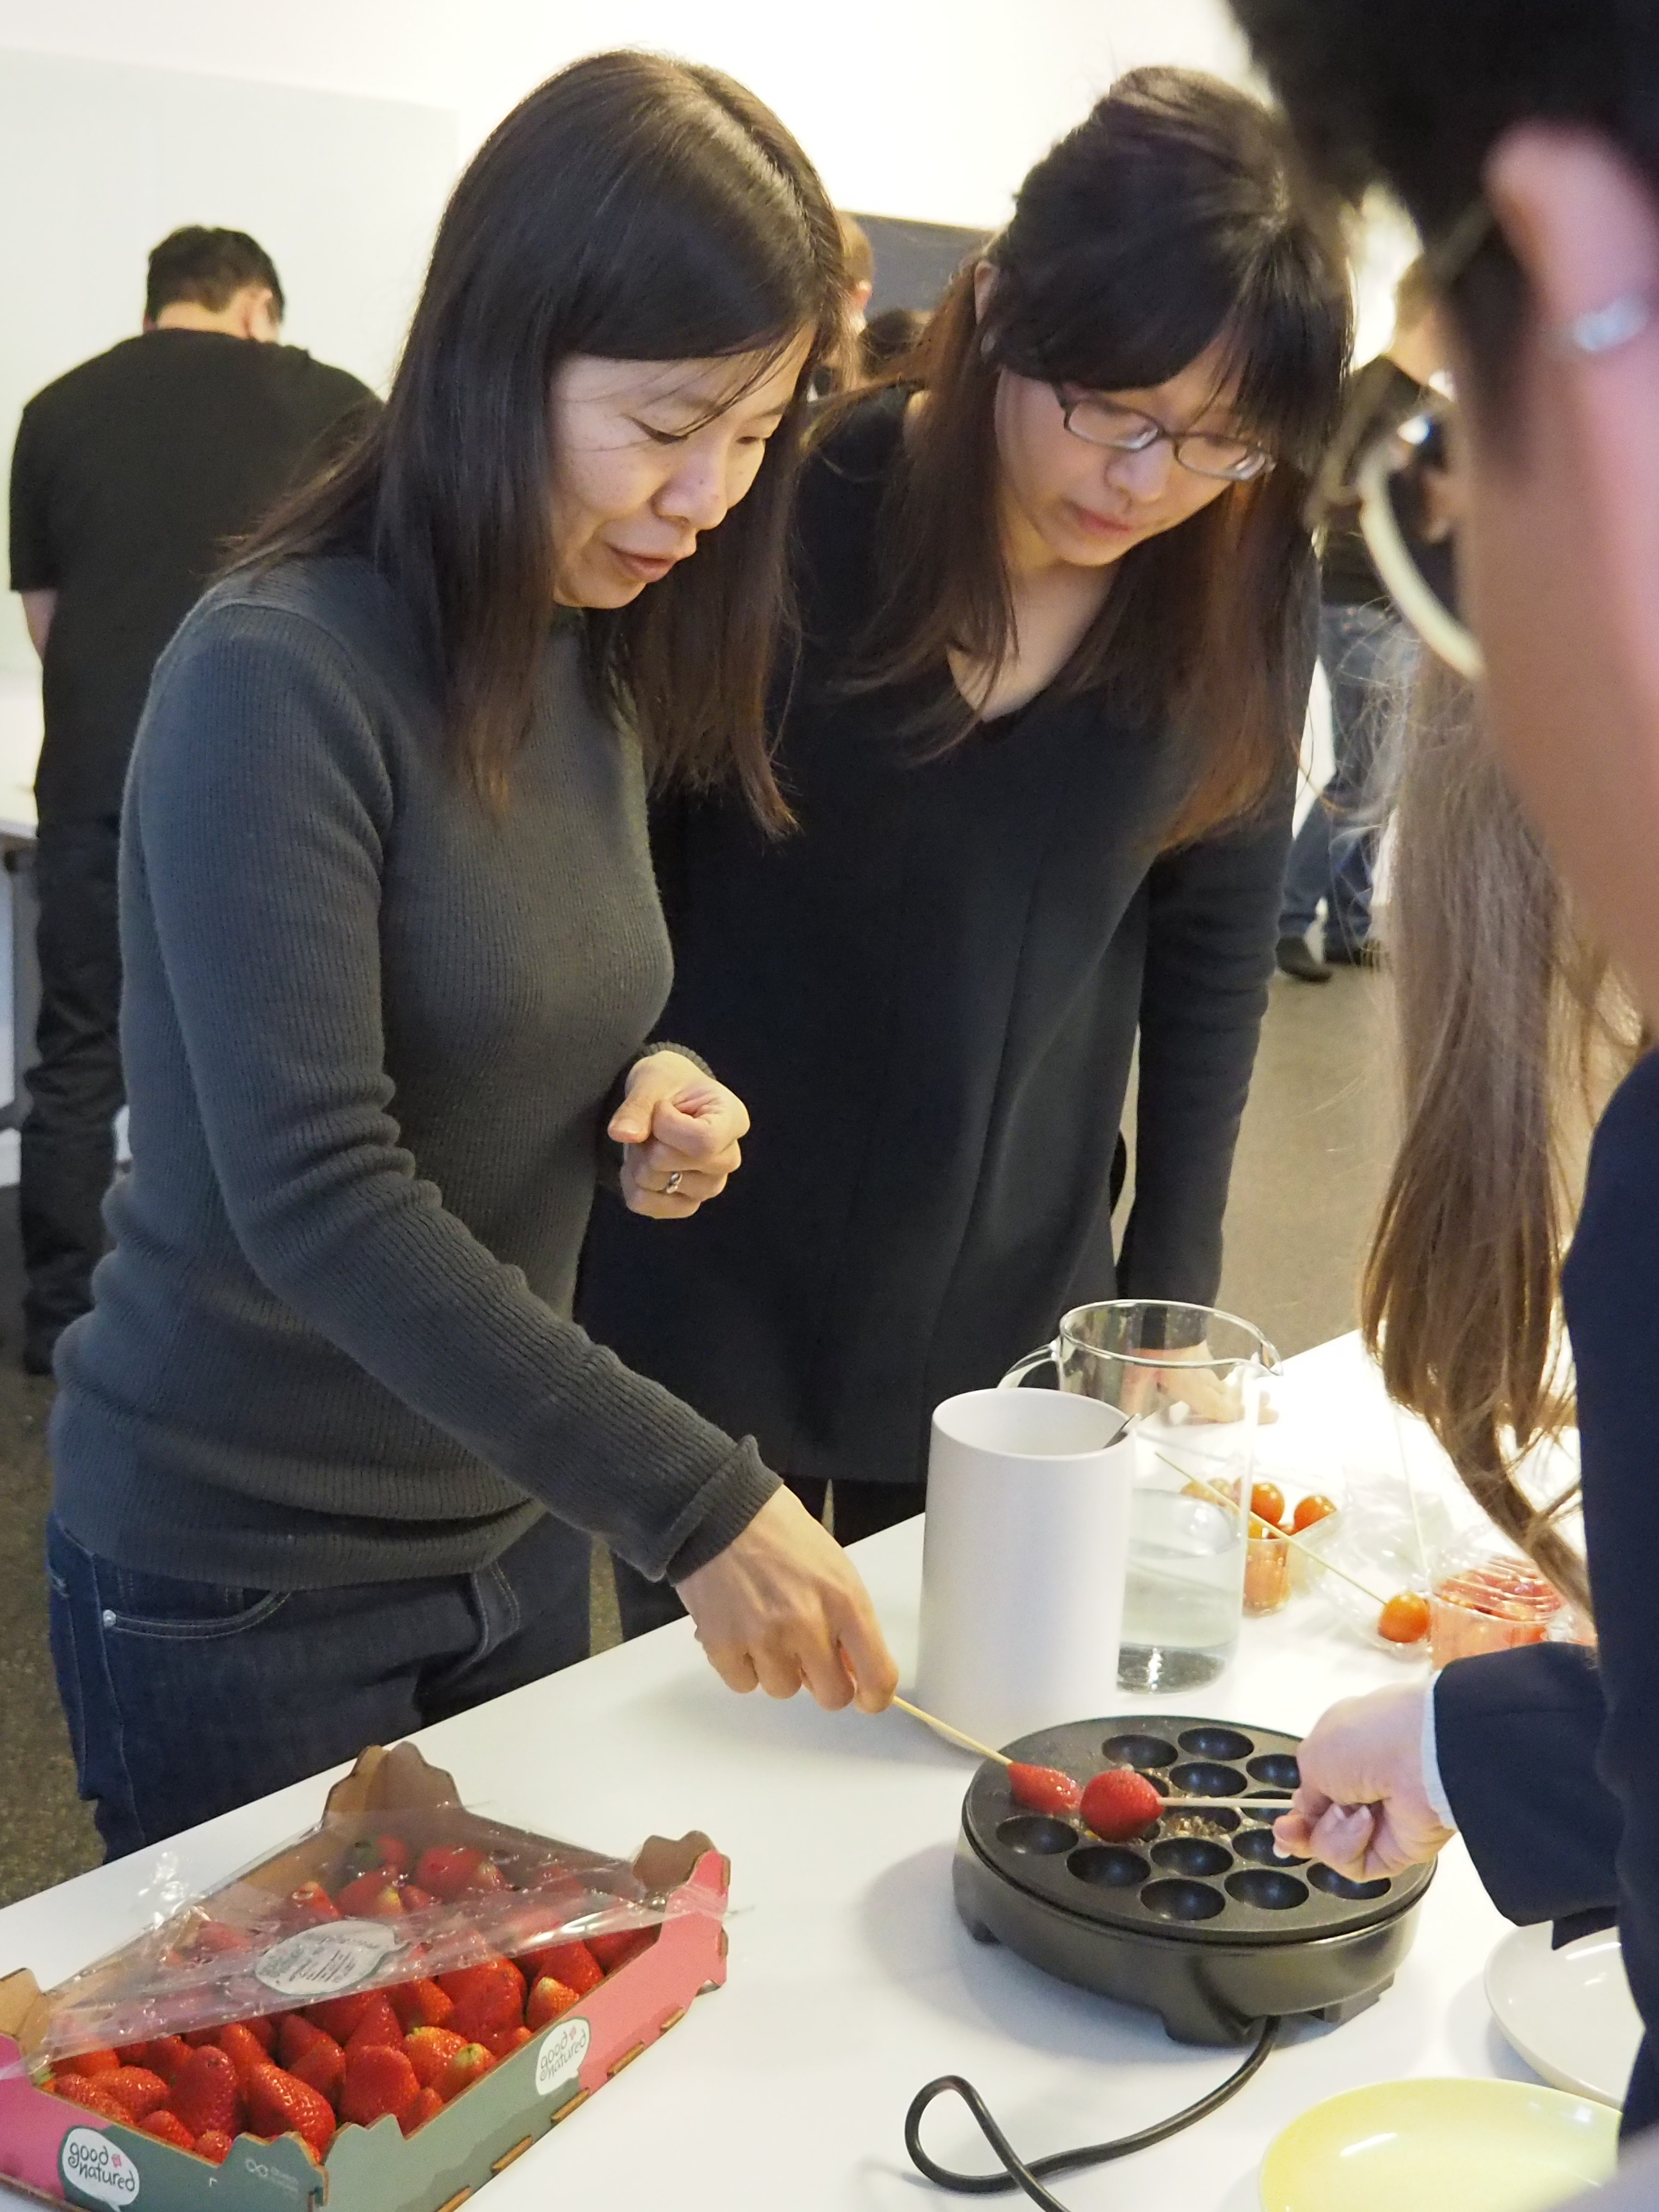 參加者使用章魚燒機製作水果糖葫蘆